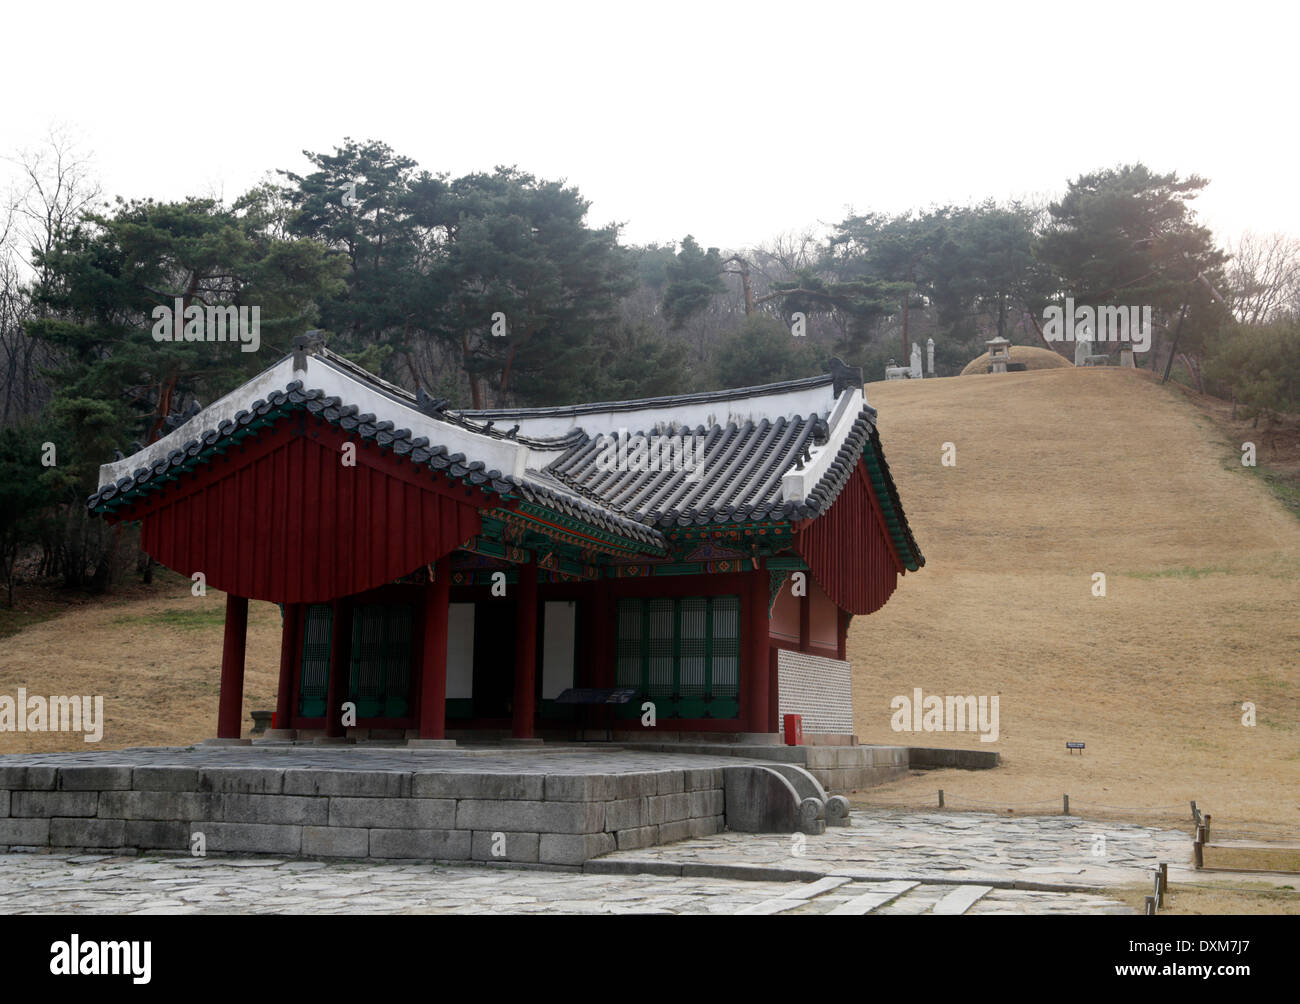 Séoul, Corée du Sud. 27 mars 2014. Jeongneung tombe royale est vu, Séoul, Corée du Sud, le jeudi 27 mars, 2014. La tombe royale est le tombeau de la Reine Consort, Sindeok la seconde épouse du roi Taejo, fondateur de la dynastie Joseon (1392-1910) et a été enregistré comme un patrimoine mondial de l'UNESCO en juin 2009, selon l'Administration du patrimoine culturel de la Corée du Sud. Banque D'Images